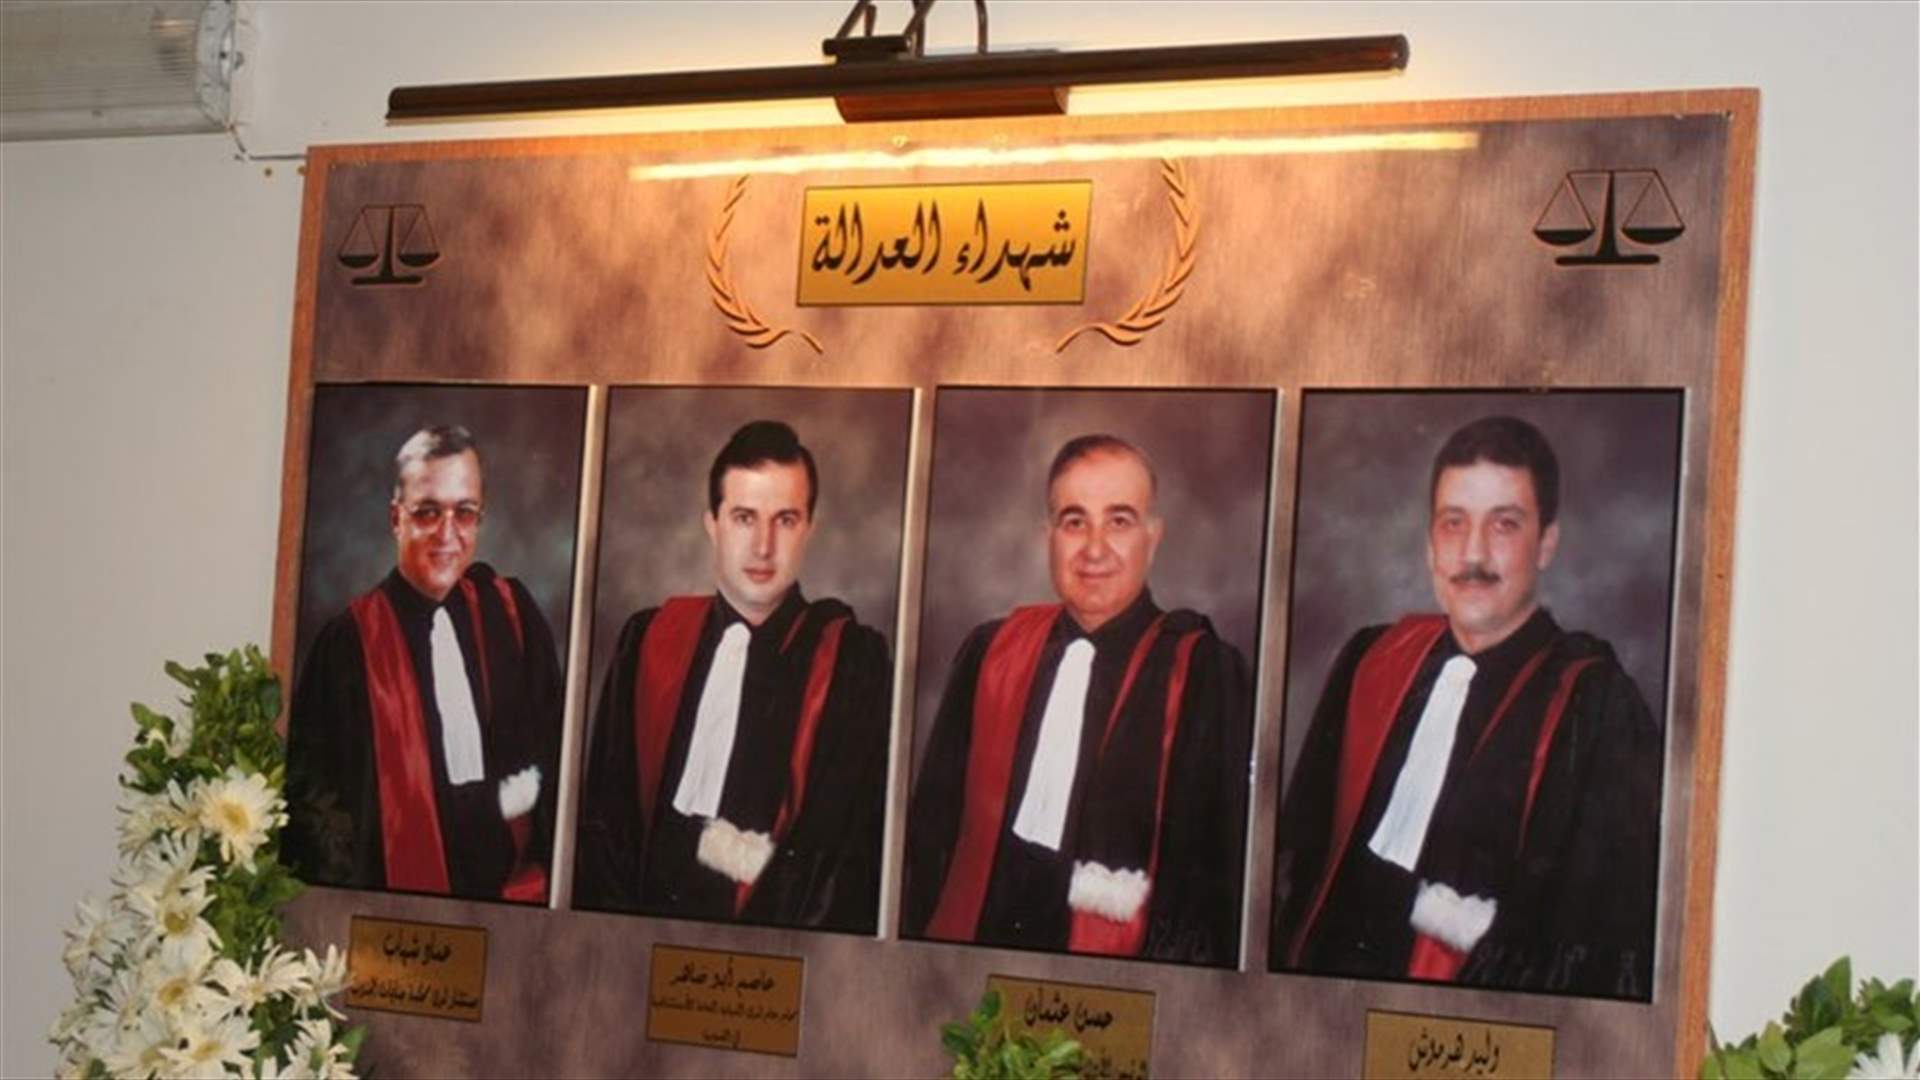 بعد 20 عاماً على الجريمة... المجلس العدلي يصدر حكمه في ملف اغتيال القضاة الأربعة